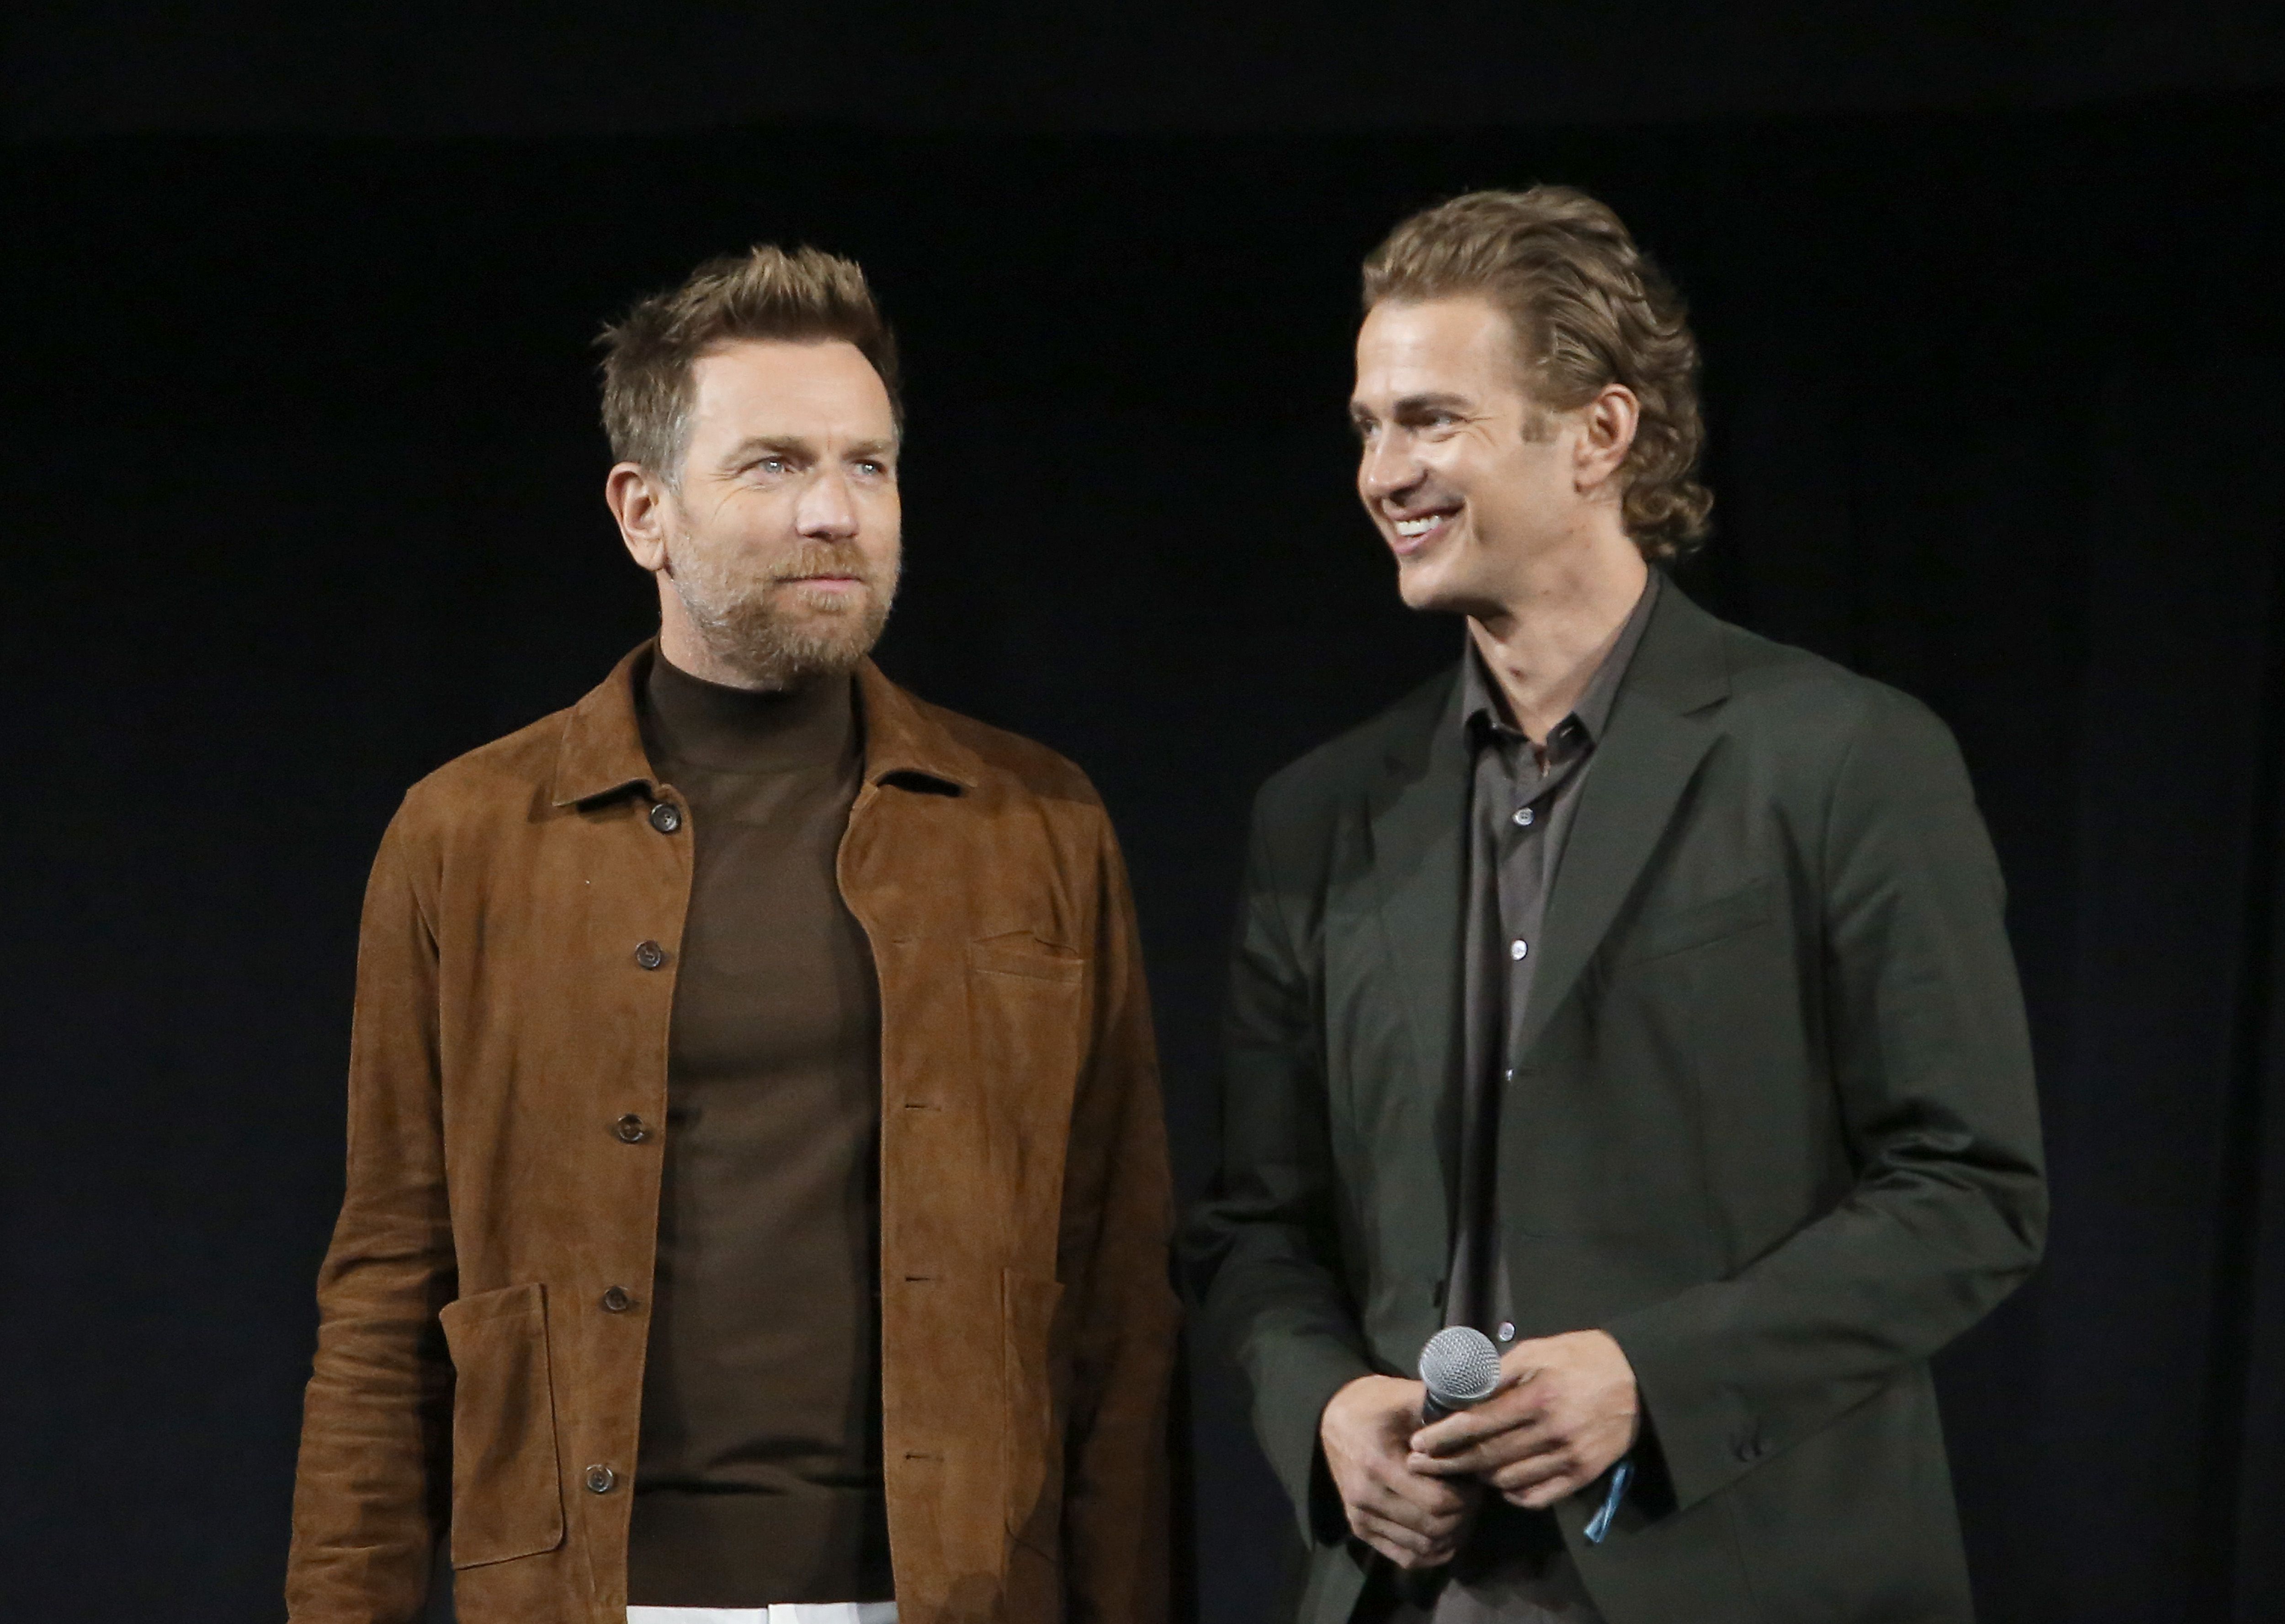 Prequels actors Ewan McGregor and Hayden Christensen attend Star Wars celebration 2022 in Anaheim